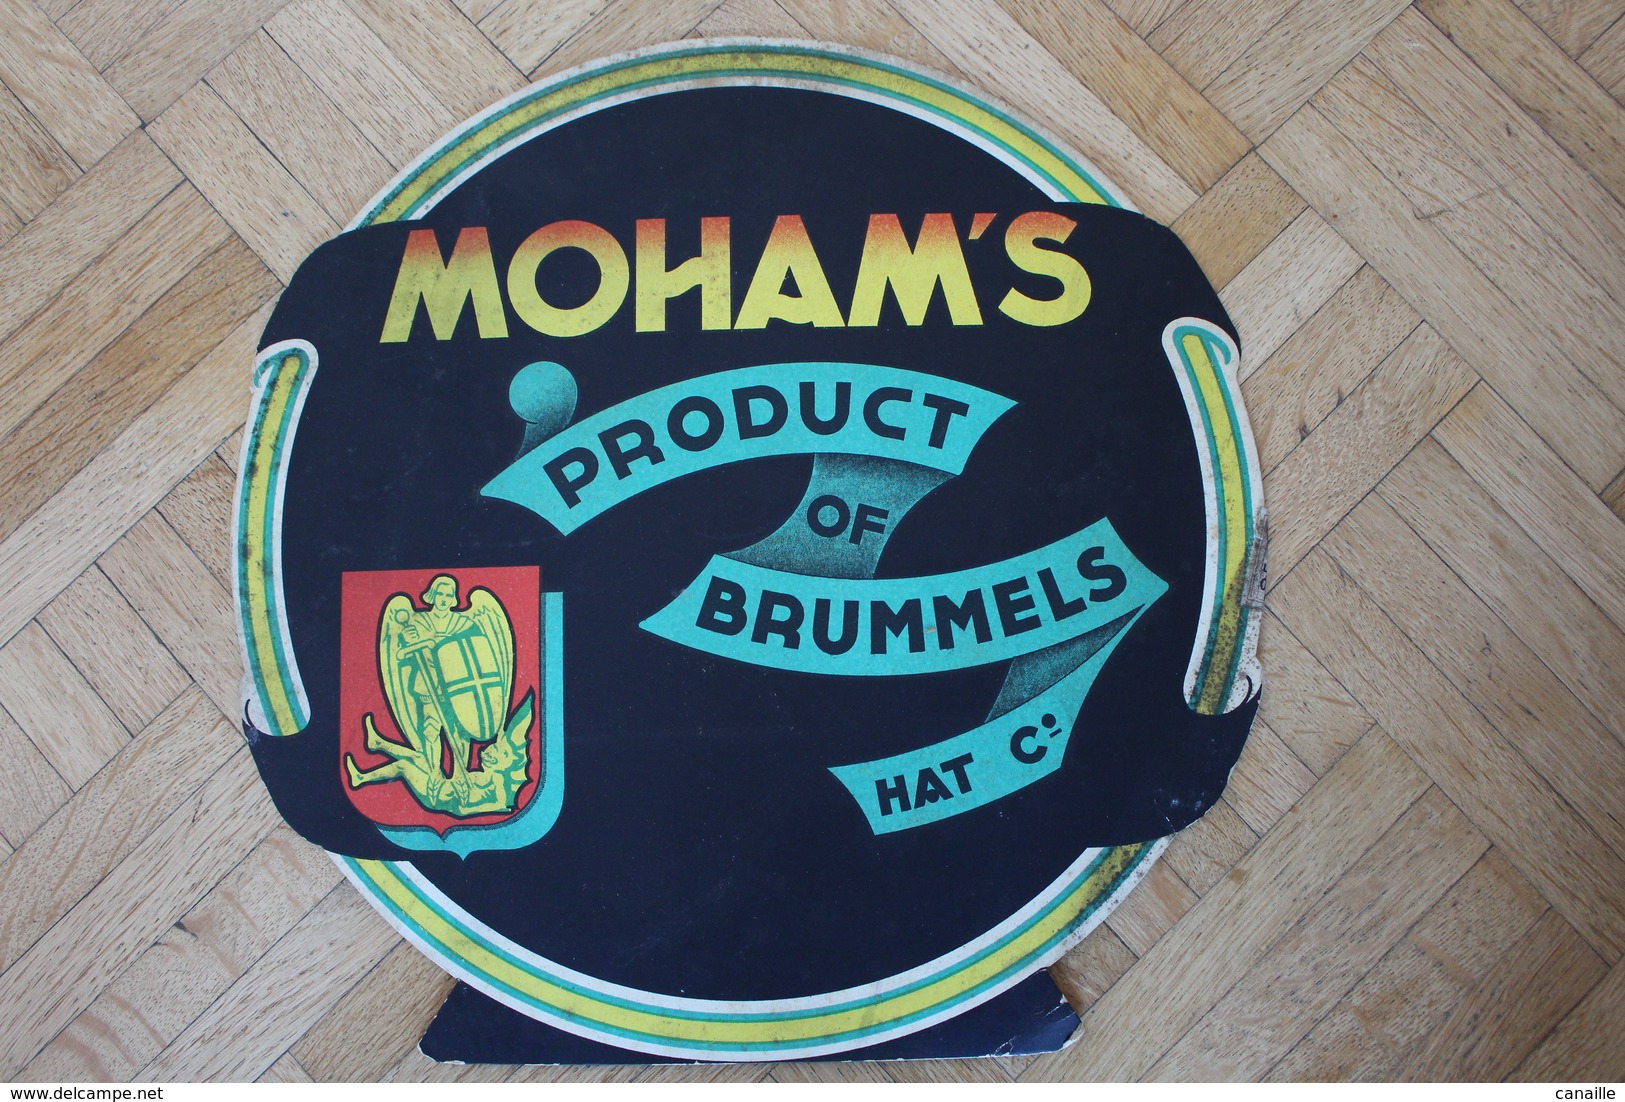 Rare Publicité De Carton - Tabac GOSSET-St MICHEL - Moham's - Product Of Brummel - 1959 - Diametre 30 Cm - Reclame-artikelen